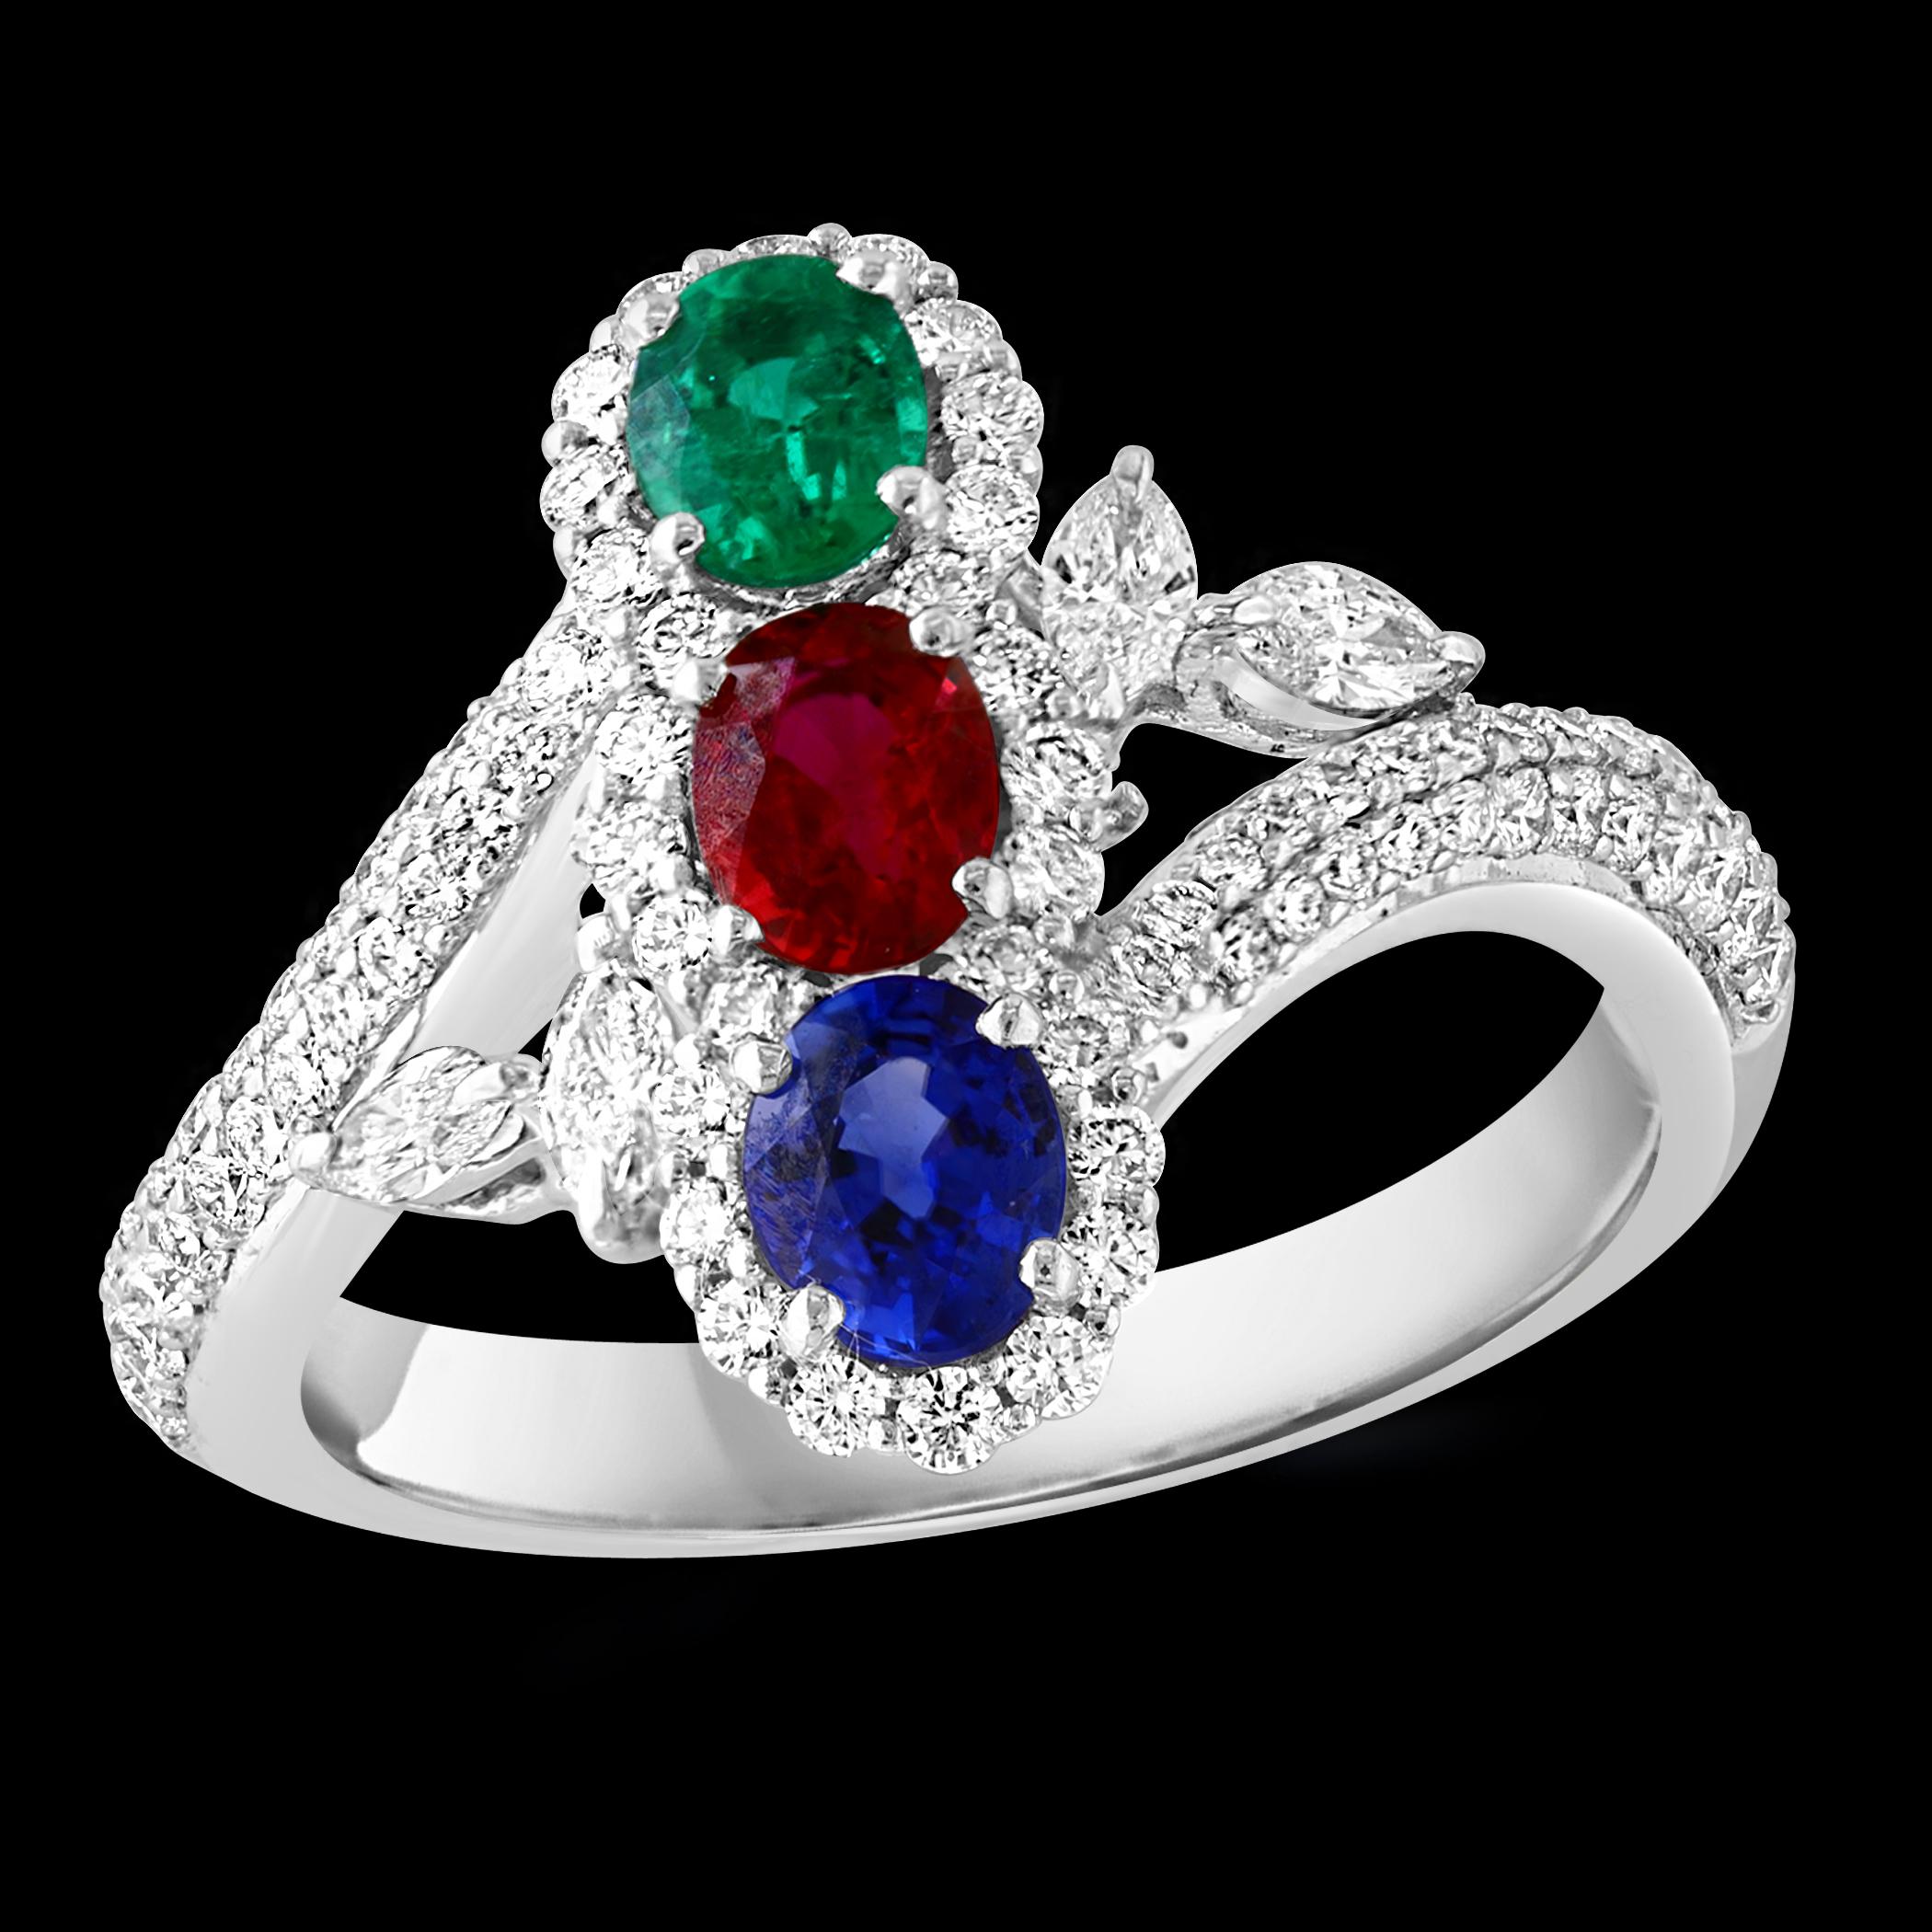 Wir präsentieren unseren exquisiten Ring aus 18 Karat Gold mit einem atemberaubenden ovalen Rubin, Smaragd und Saphir von 1,2 Karat sowie Diamanten von ca. 1,5 Karat im Brillantschliff. Dieser Ring ist ein wahres Zeugnis für Schönheit und Eleganz.